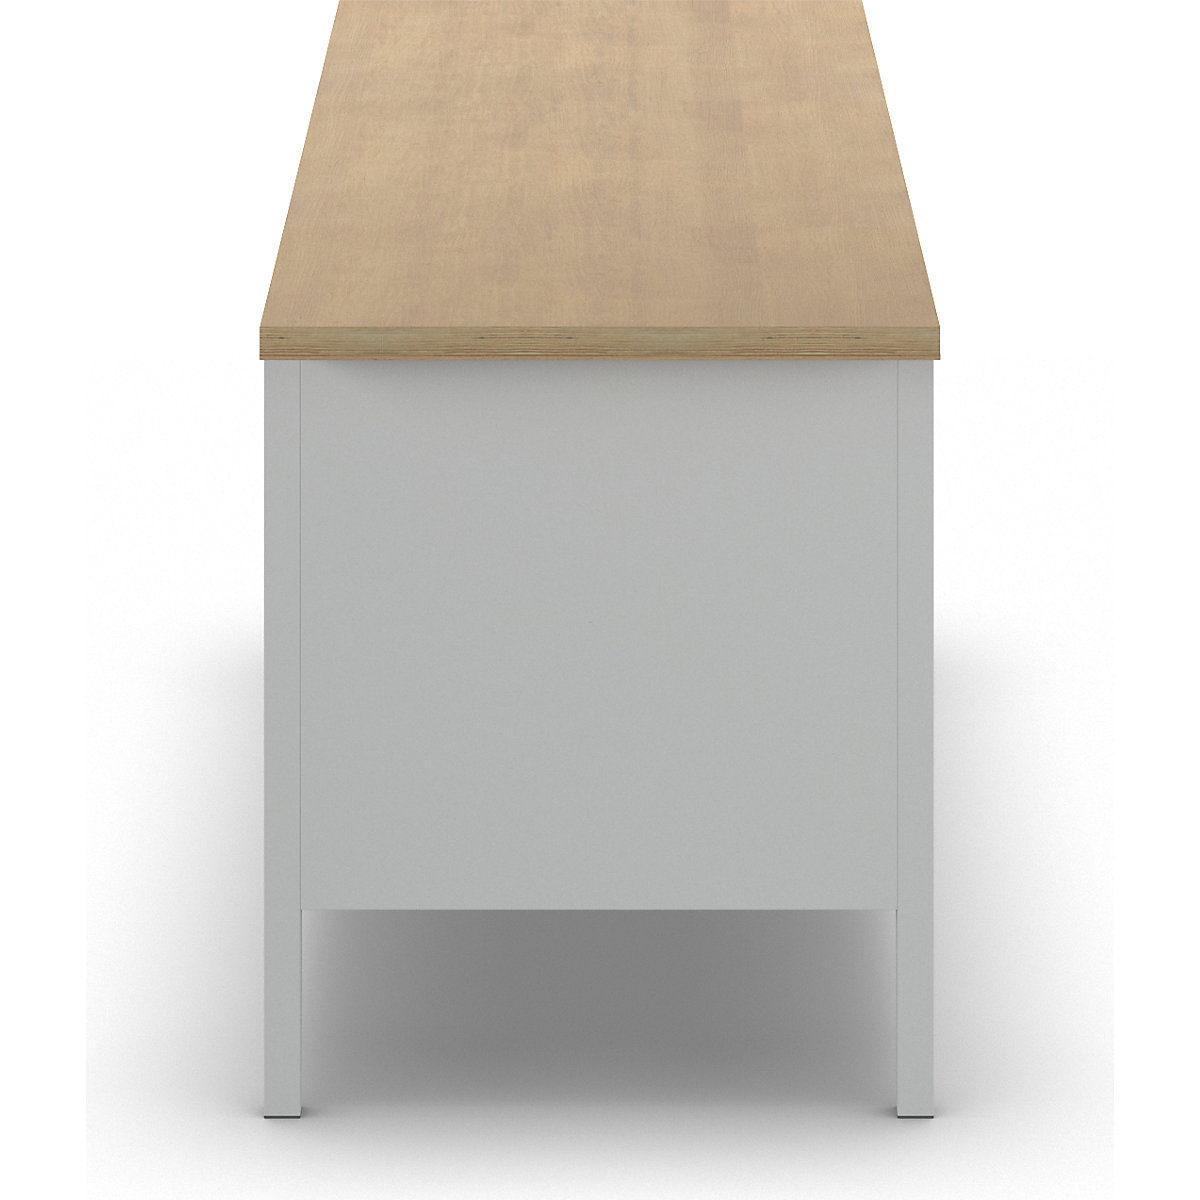 Stół warsztatowy z blatem z litego buku, konstrukcja ramowa – LISTA (Zdjęcie produktu 2)-1